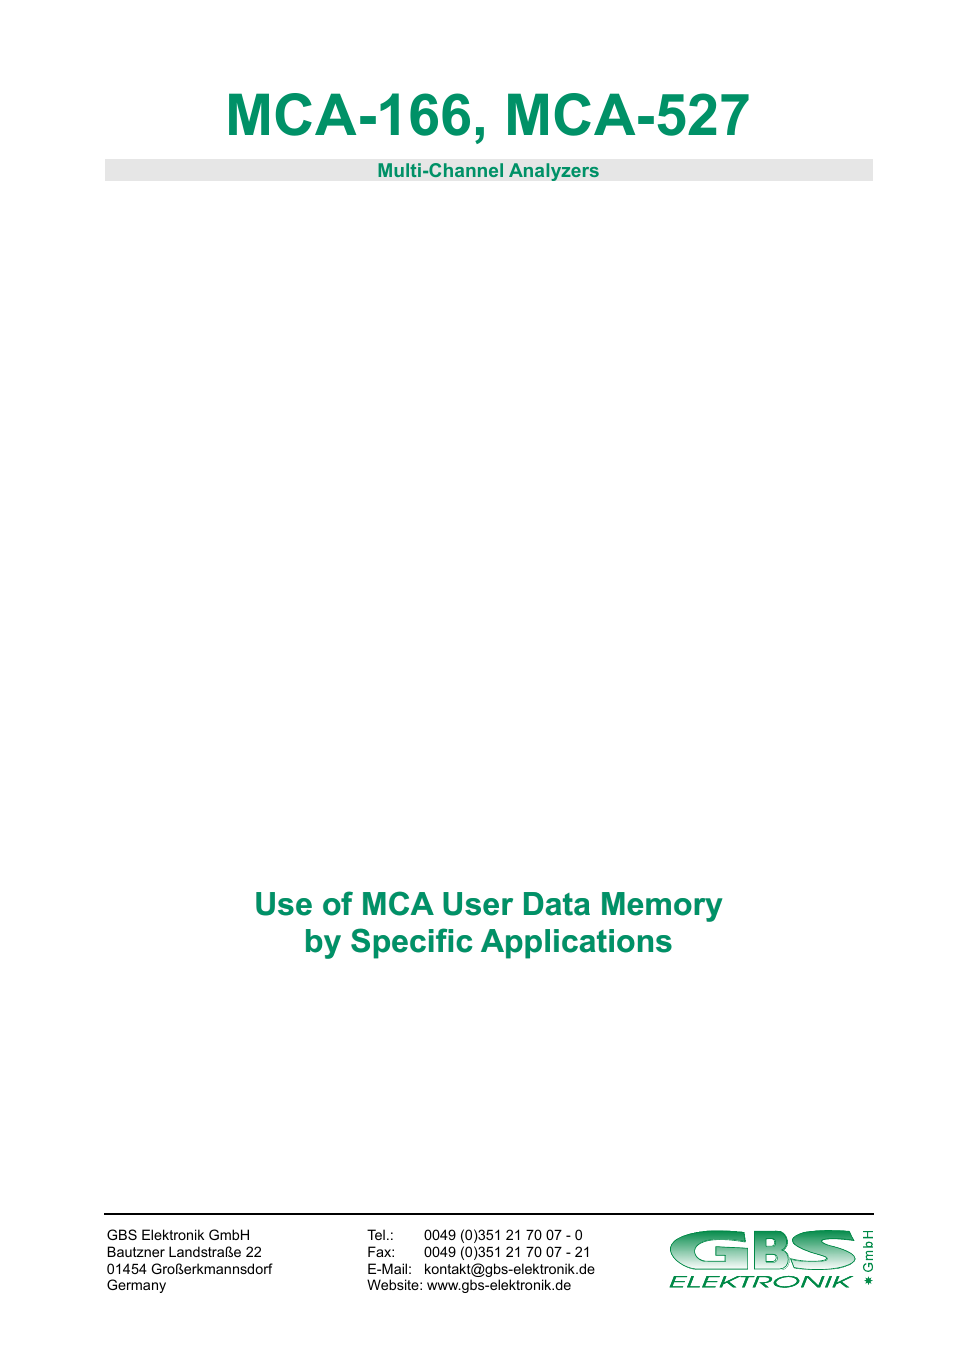 MCA-166 User Data Memory